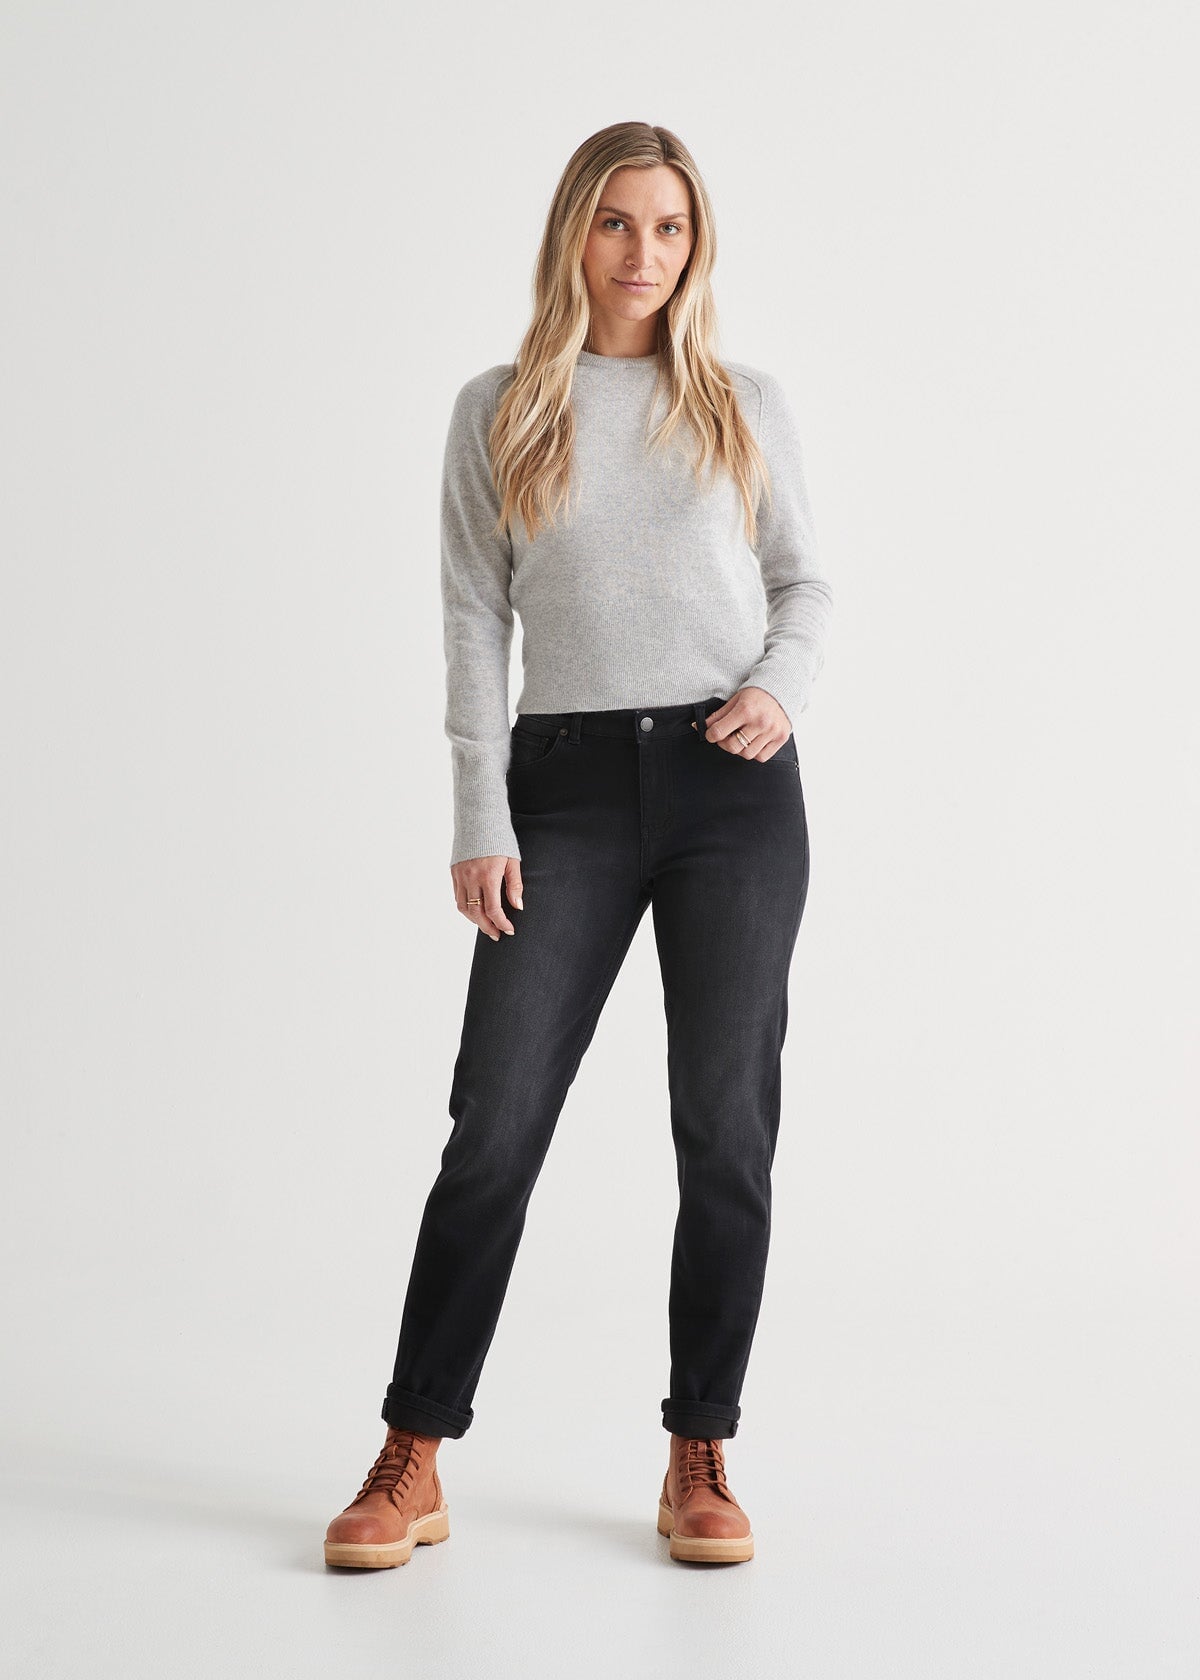 Women's True Shape Jeans, Classic Fit Straight-Leg Fleece-Lined